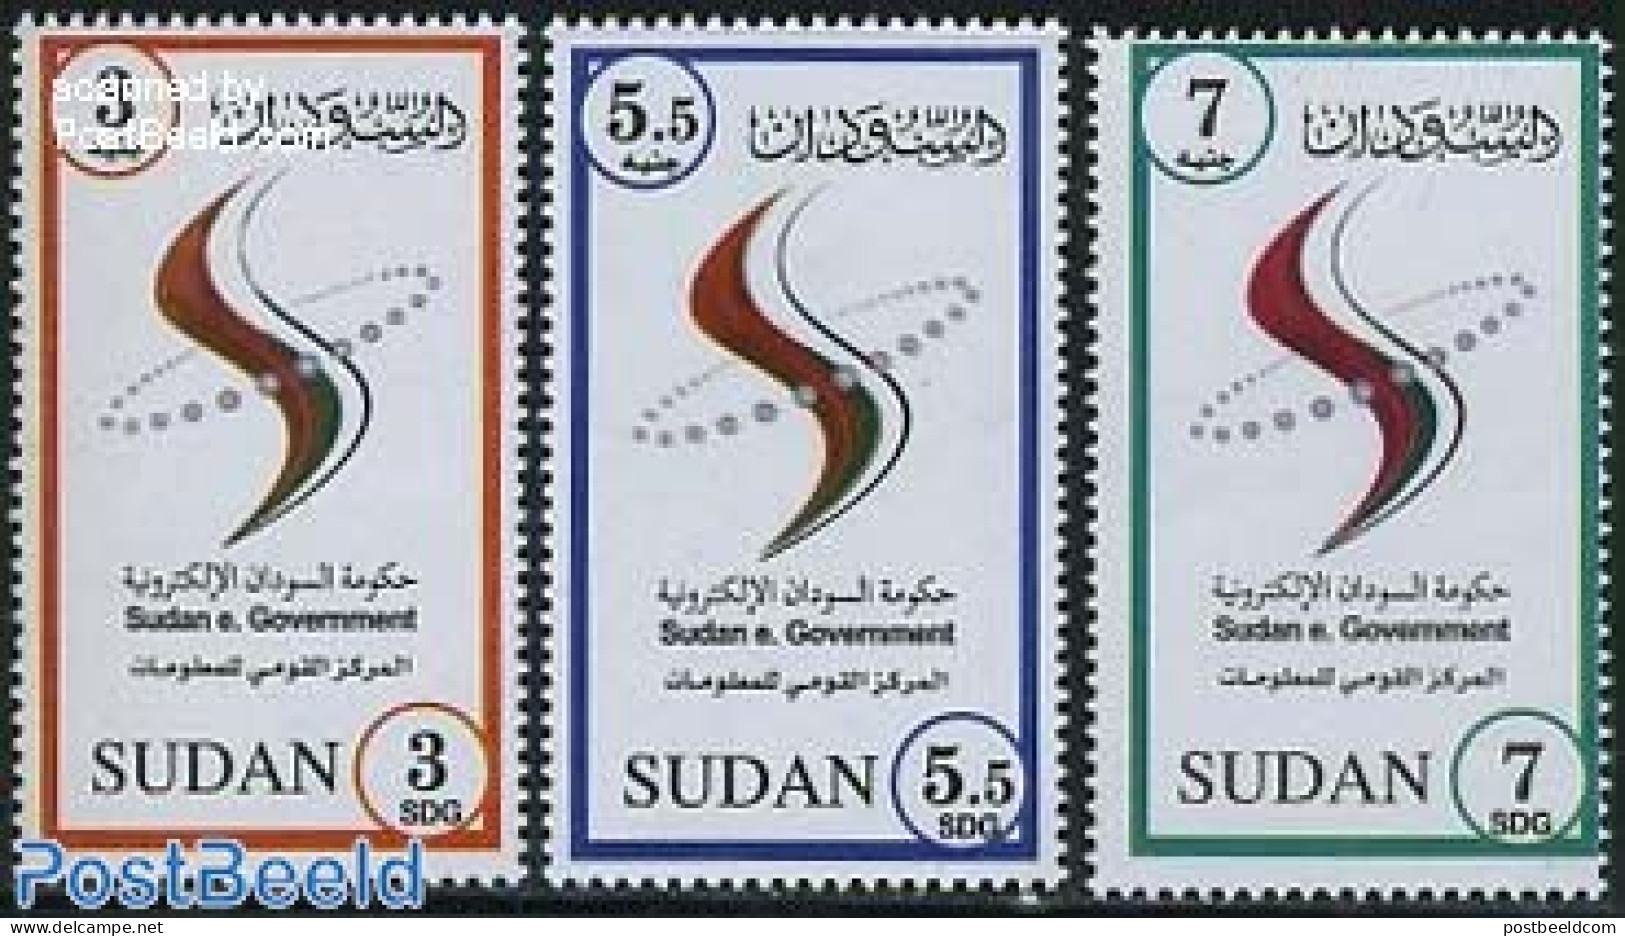 Sudan 2011 Sudan E. Government 3v, Mint NH - Soudan (1954-...)